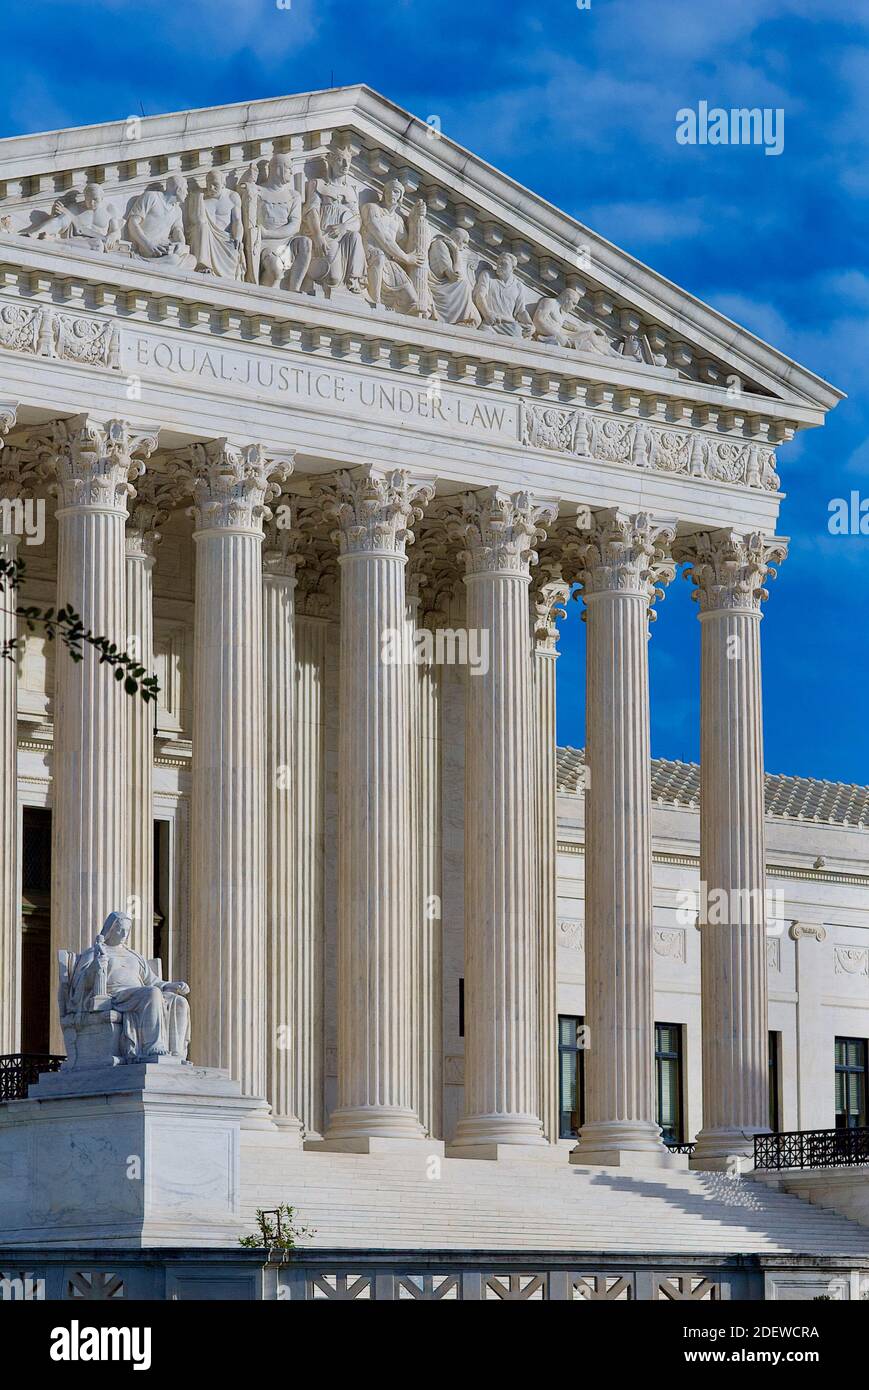 Washington, D.C. - 3 novembre 2020 : le soleil baigne l'édifice de la Cour suprême des États-Unis le jour de l'élection du président des États-Unis. Banque D'Images